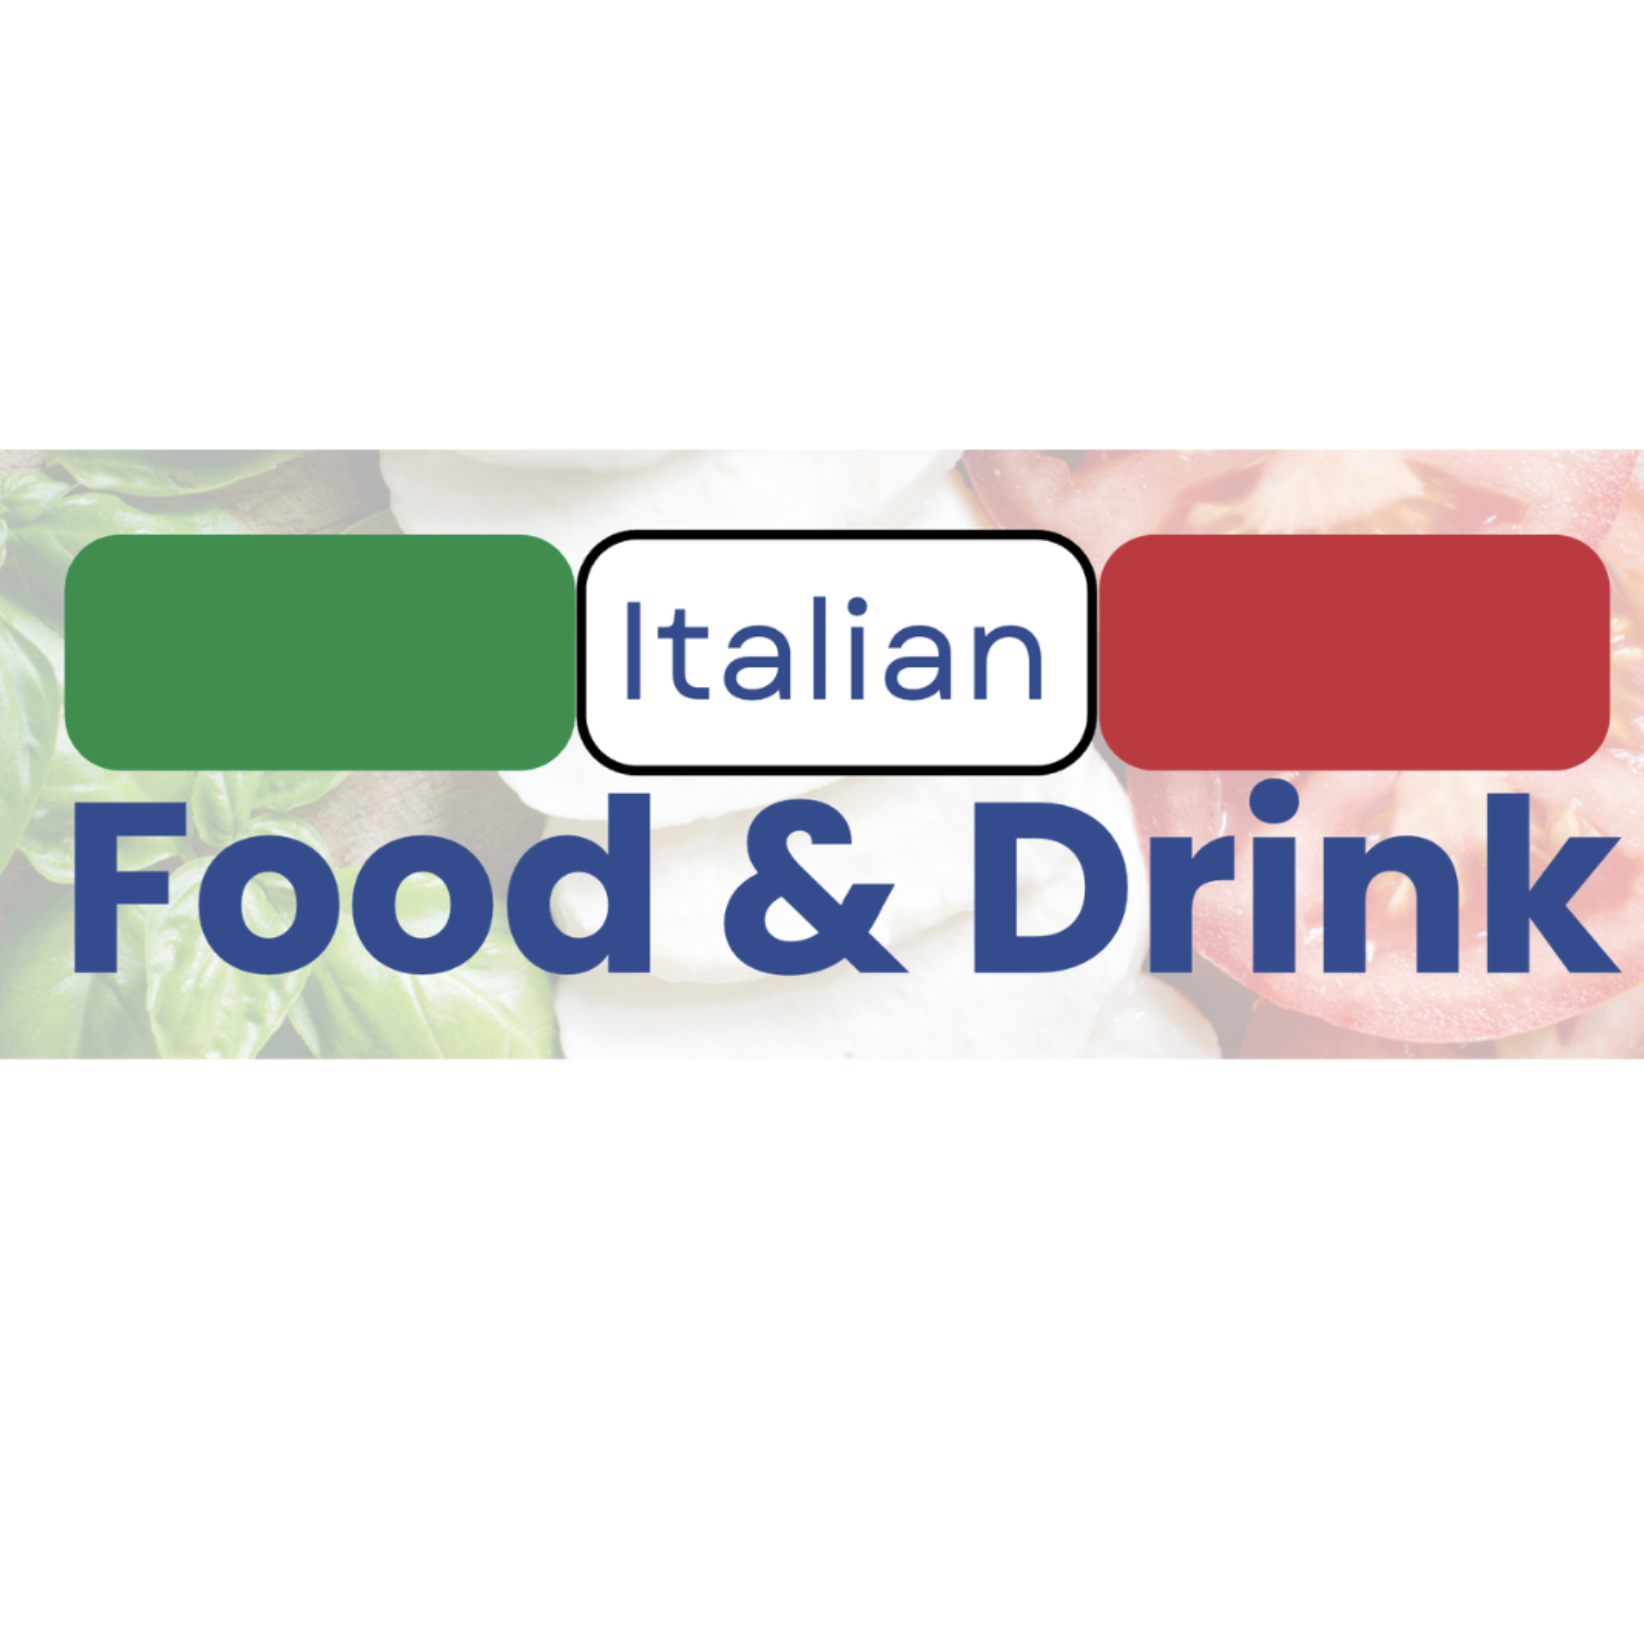 Italian Food & Drink